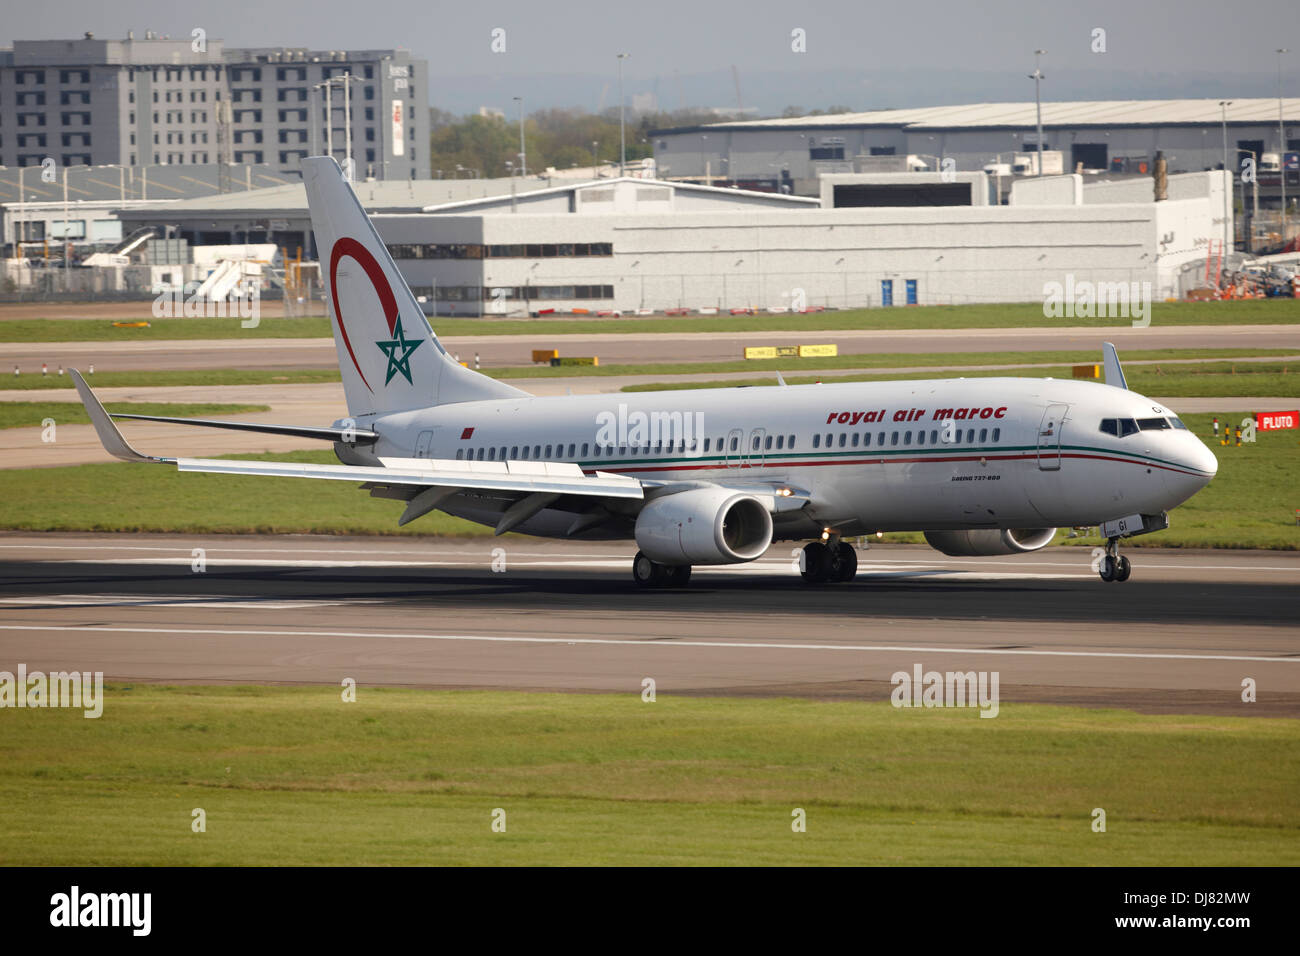 Royal Air Maroc Boeing 737 Landung am Flughafen London Heathrow Stockfoto